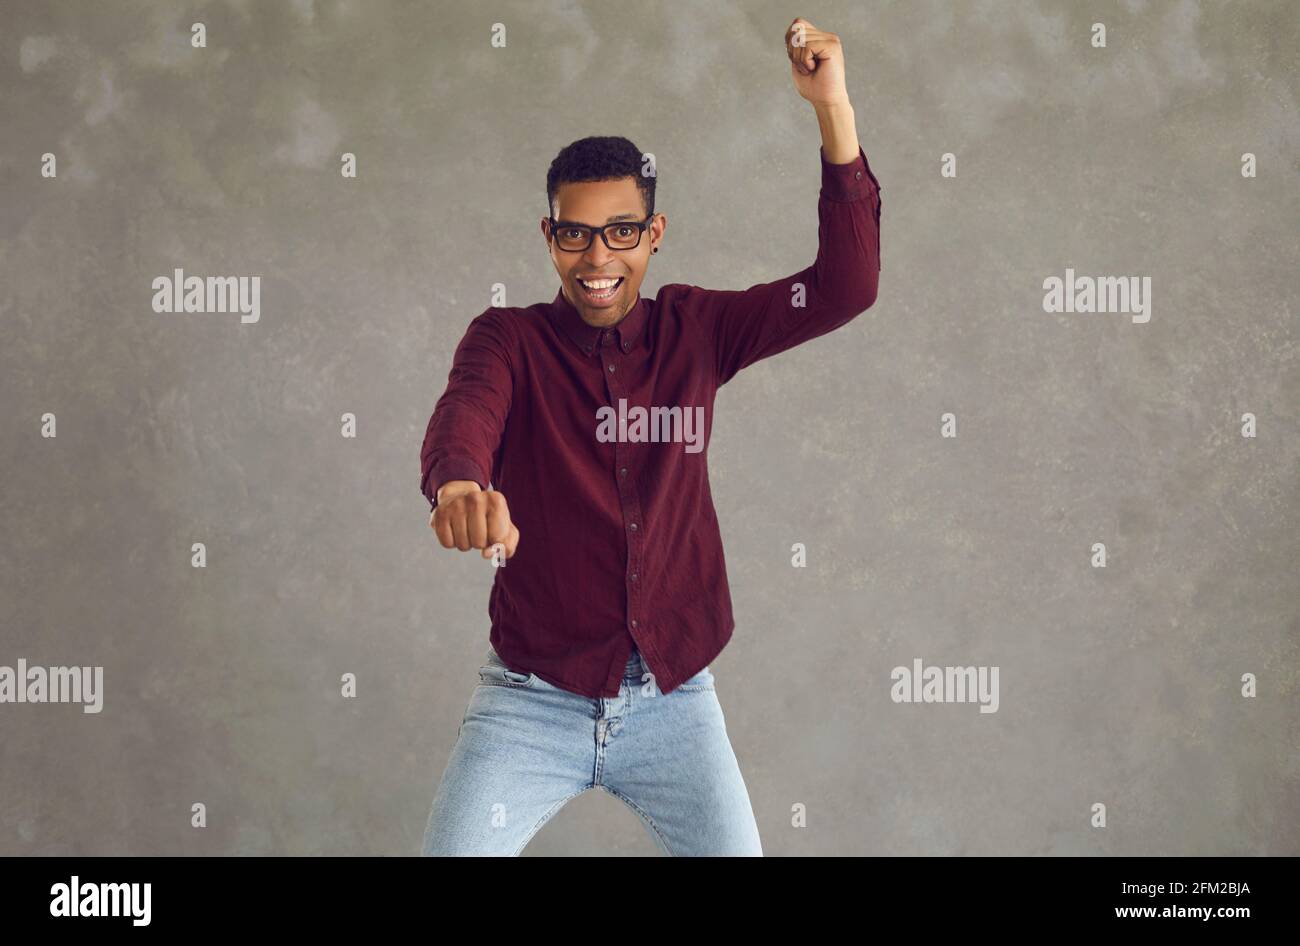 Un jeune homme afro-américain se réjouit de son succès avec un studio de poings serrés prise de vue Banque D'Images